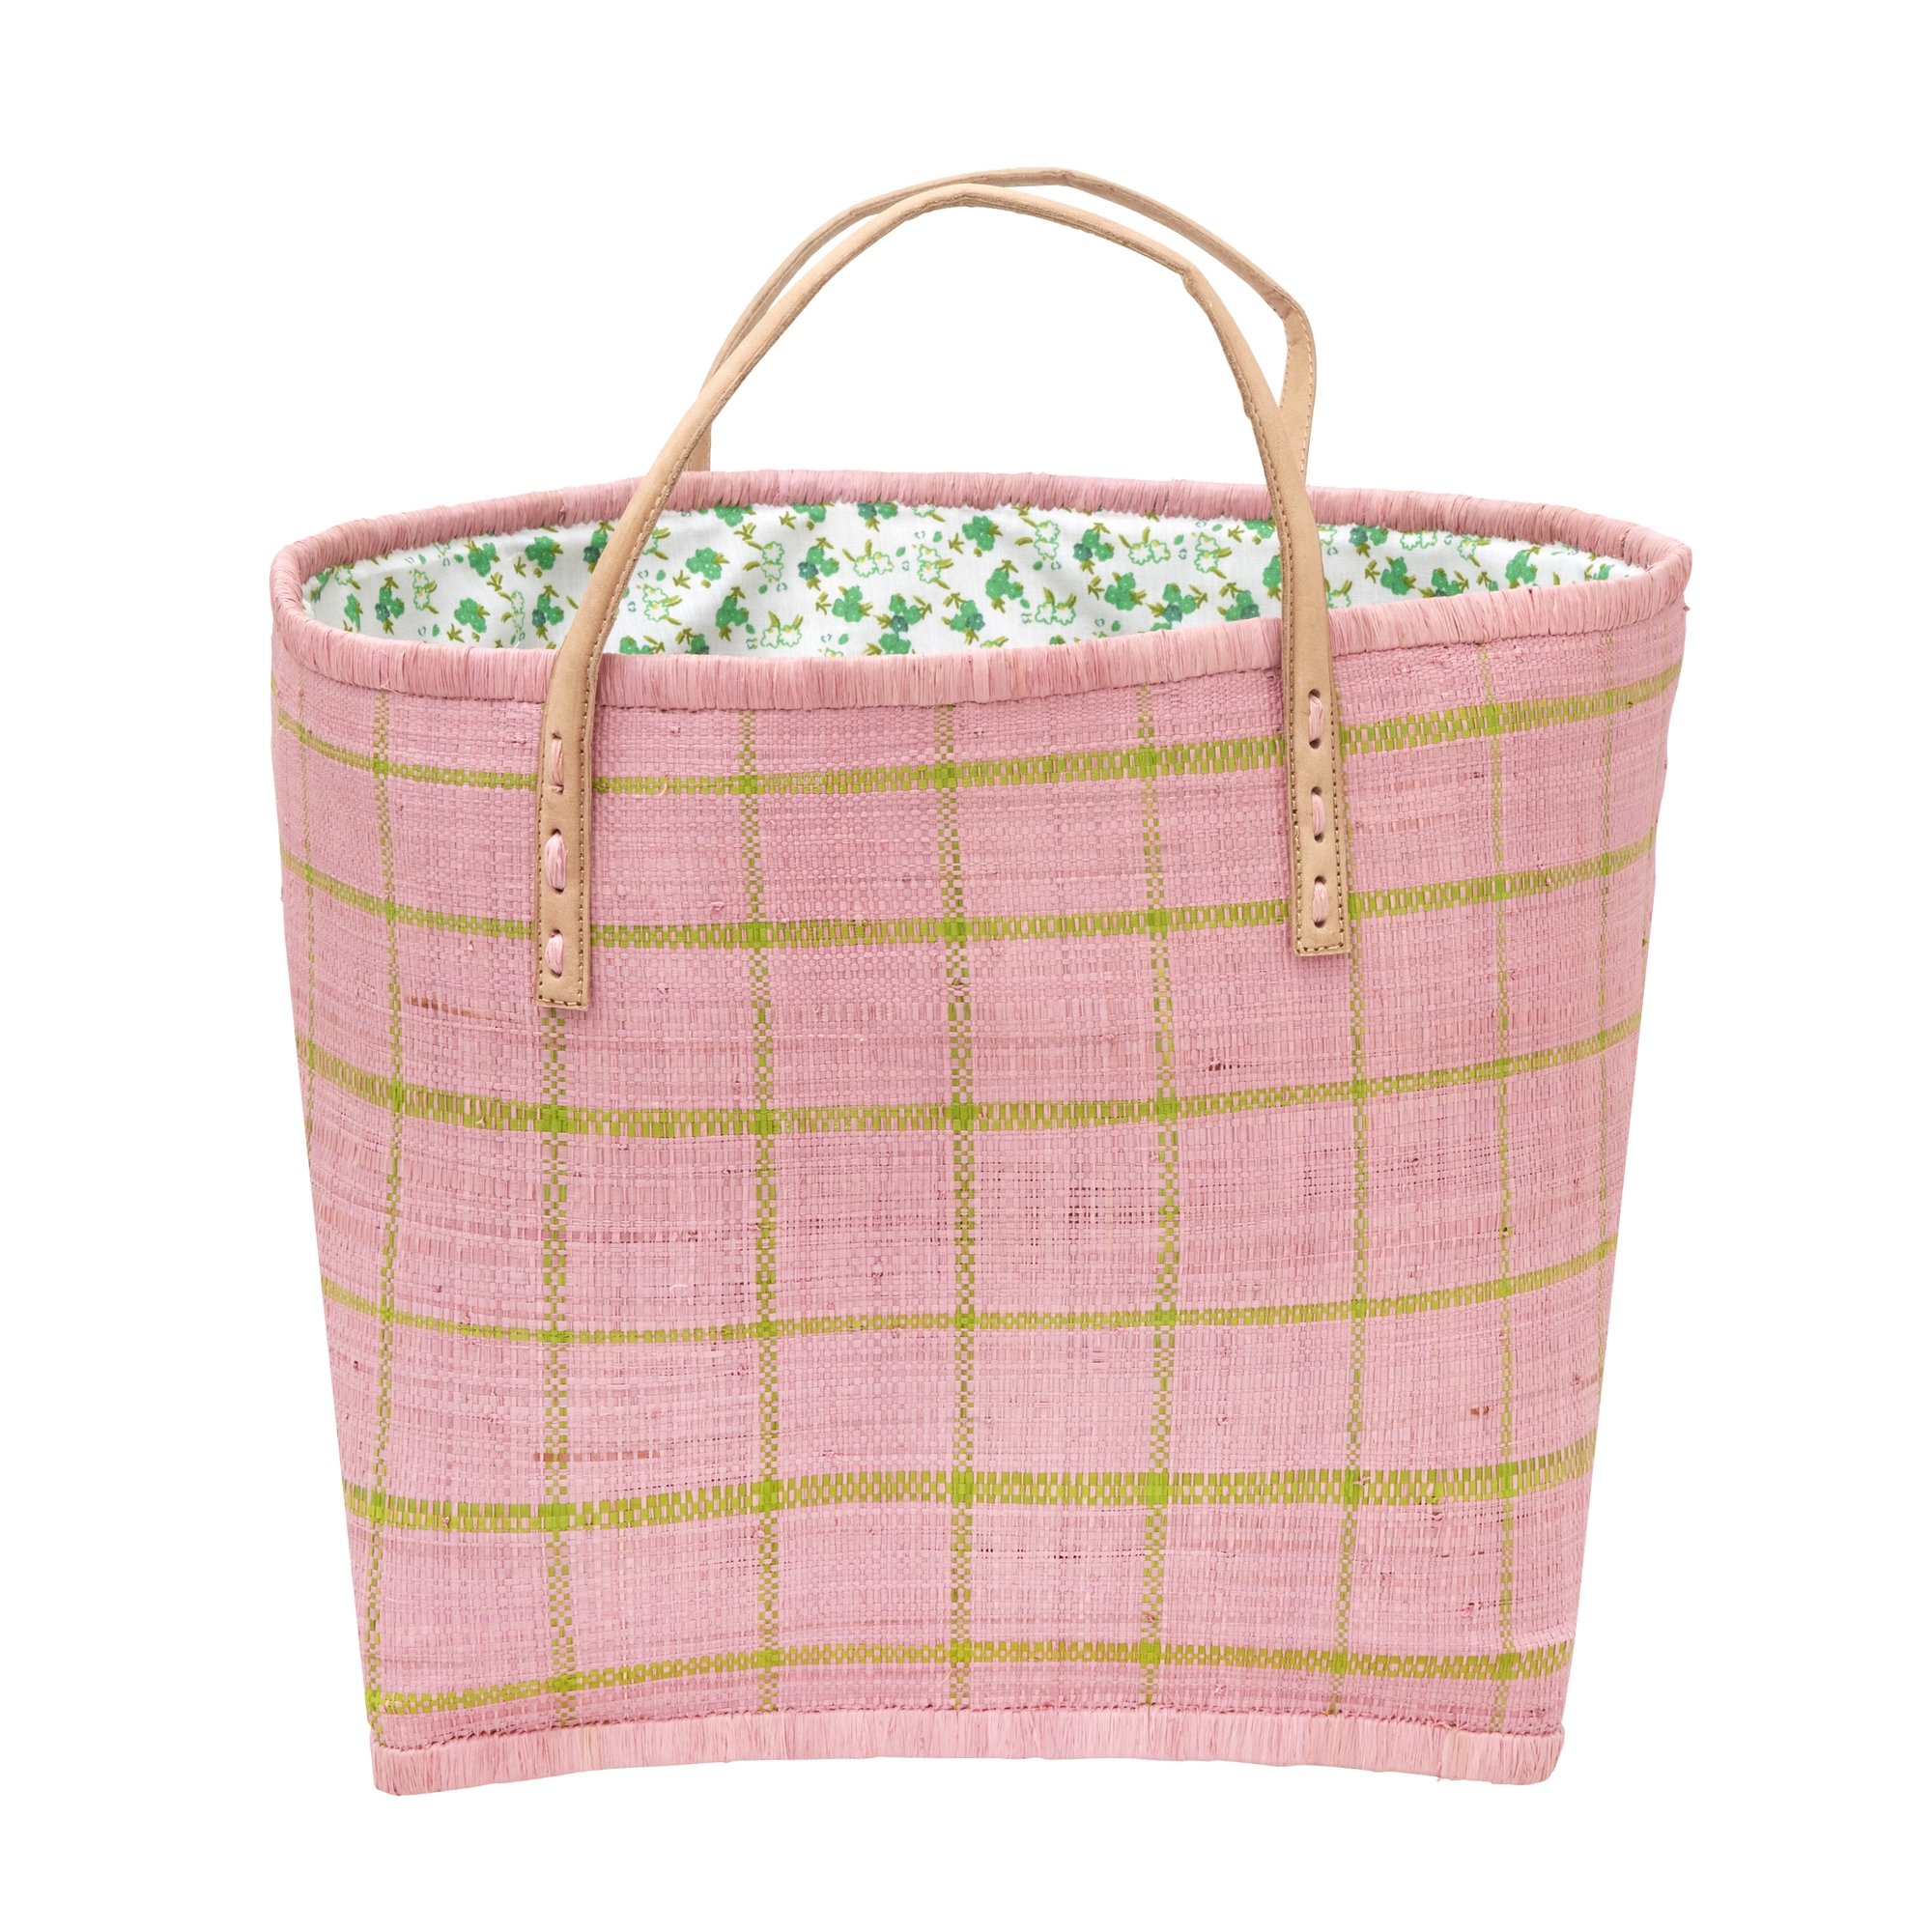 Rice - Raffia Bag in Soft Rose and Green Checks and Fabric Closing - Hjemme og kjøkken